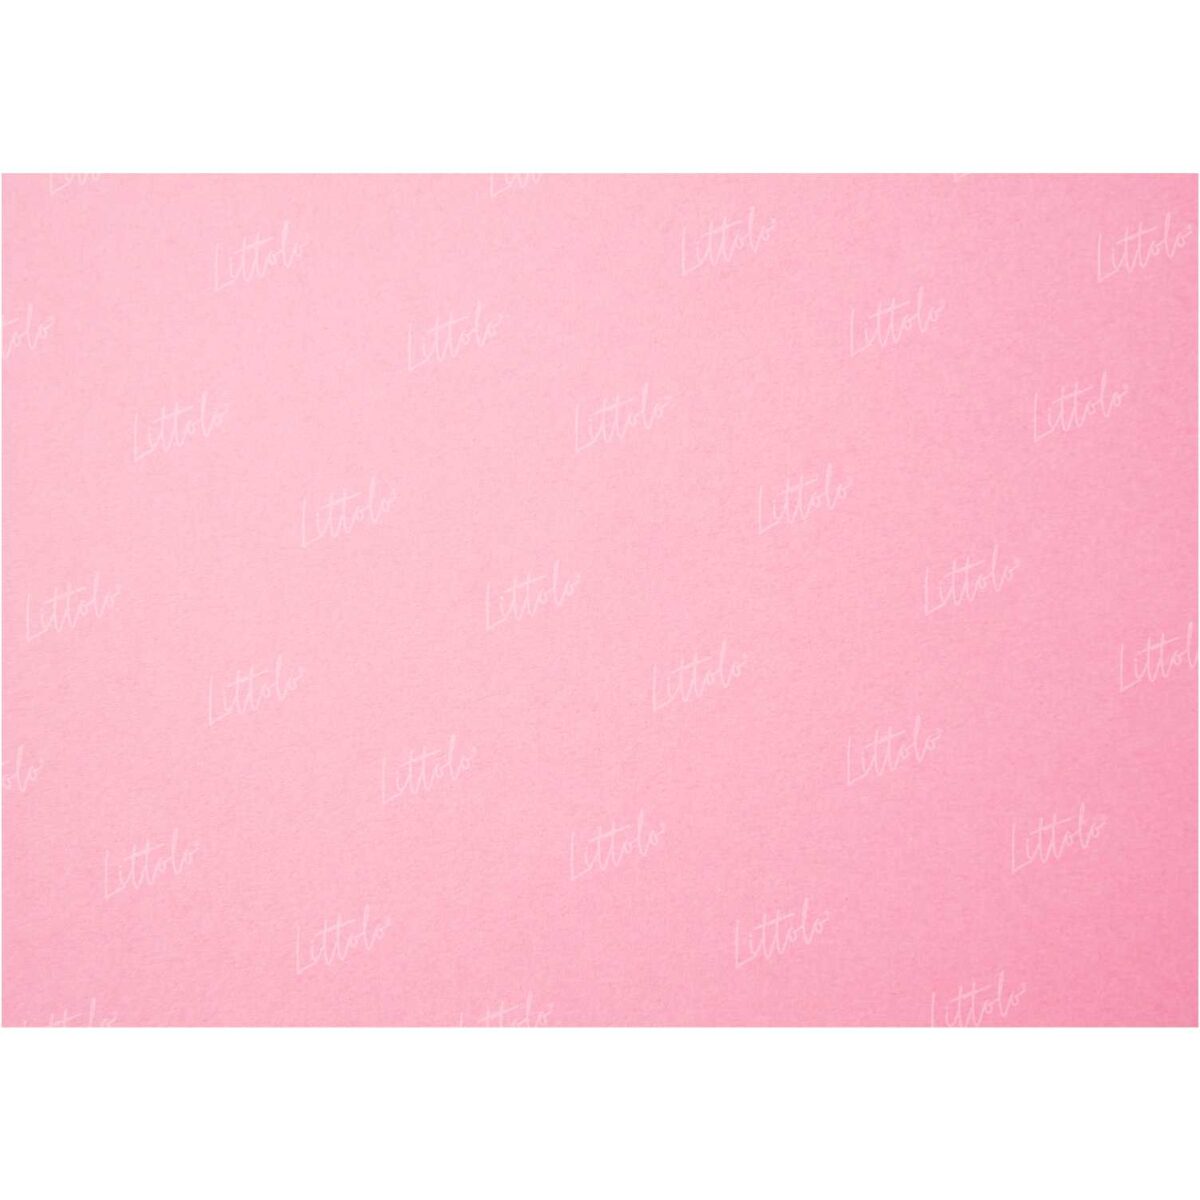 LB0026 Pink Love Texture Backdrop